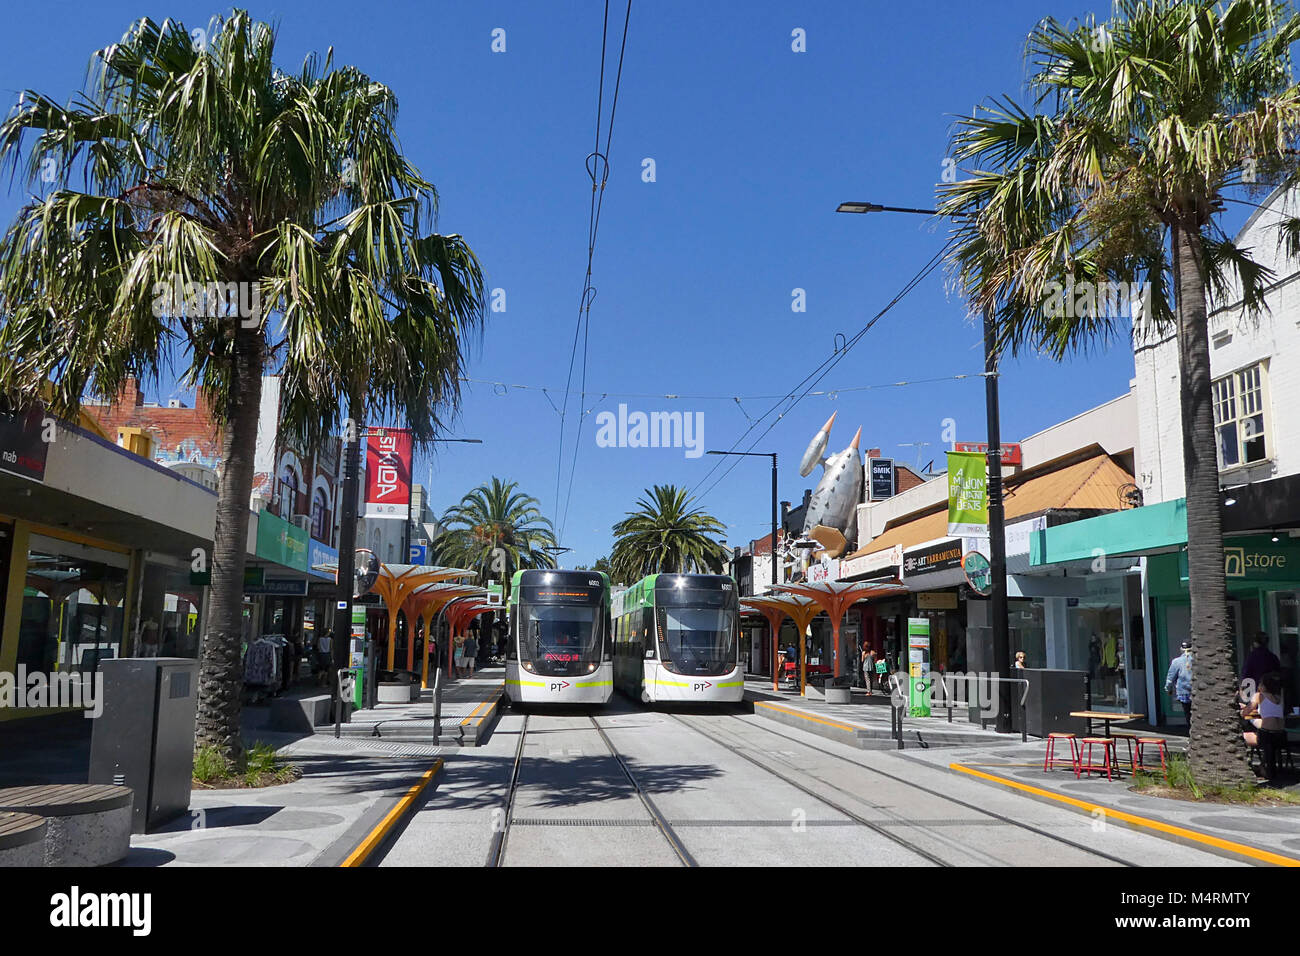 St Kilda, Melbourne, Australie : Mars 07, 2017 : deux tramways électriques sont des temps d'attente à l'arrêt de tramway Acland Street à St Kilda. Banque D'Images